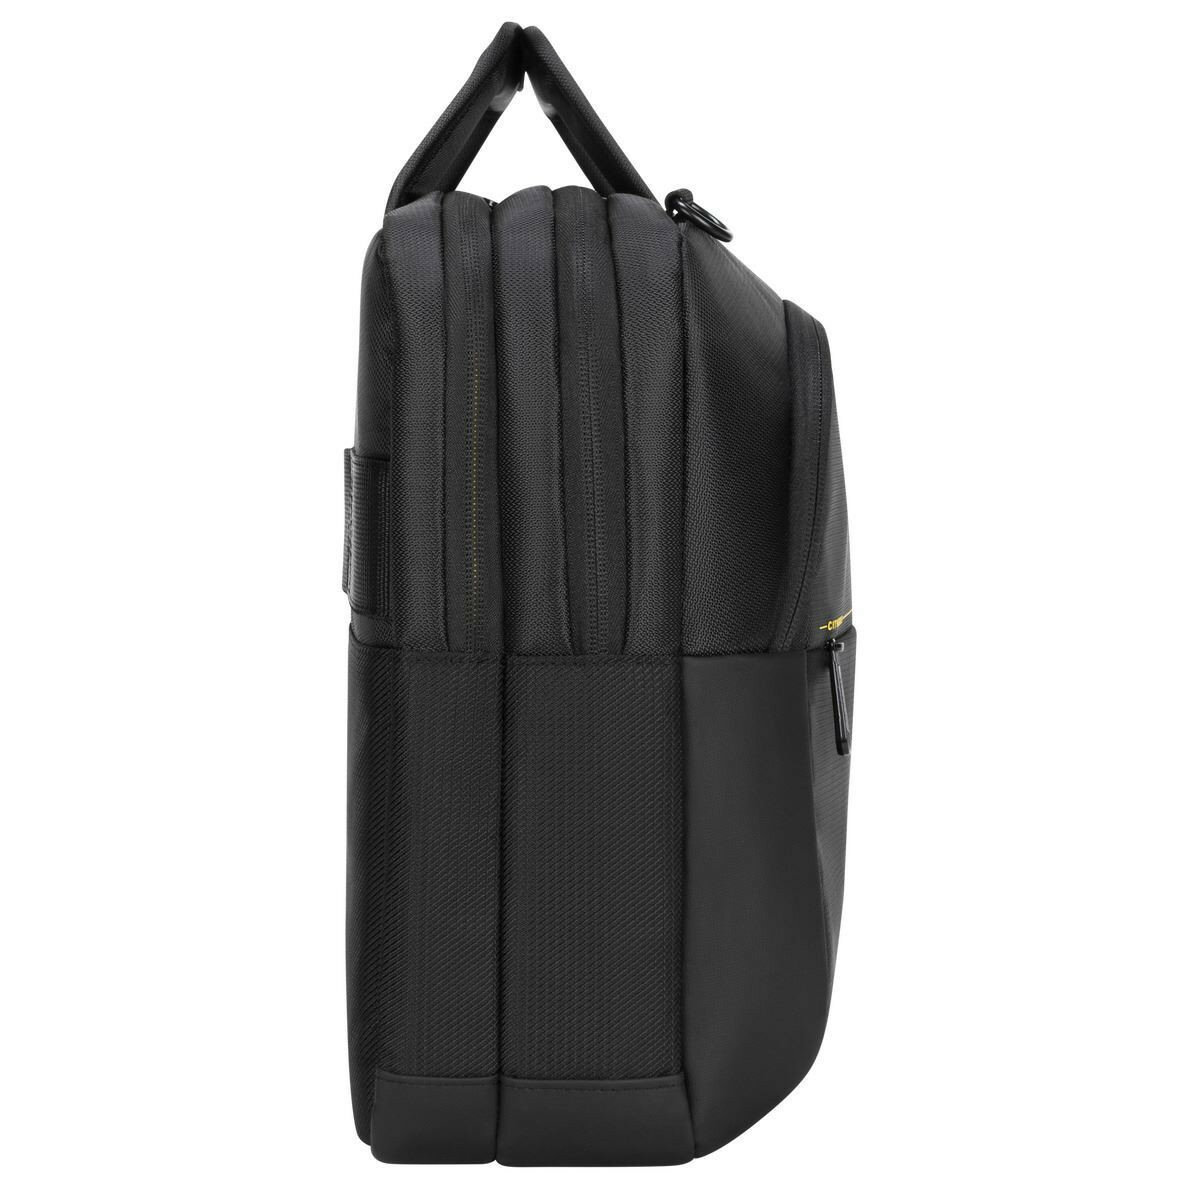 Torba na laptopa Targus CityGear 15.6'' czarna widok na torbę od boku